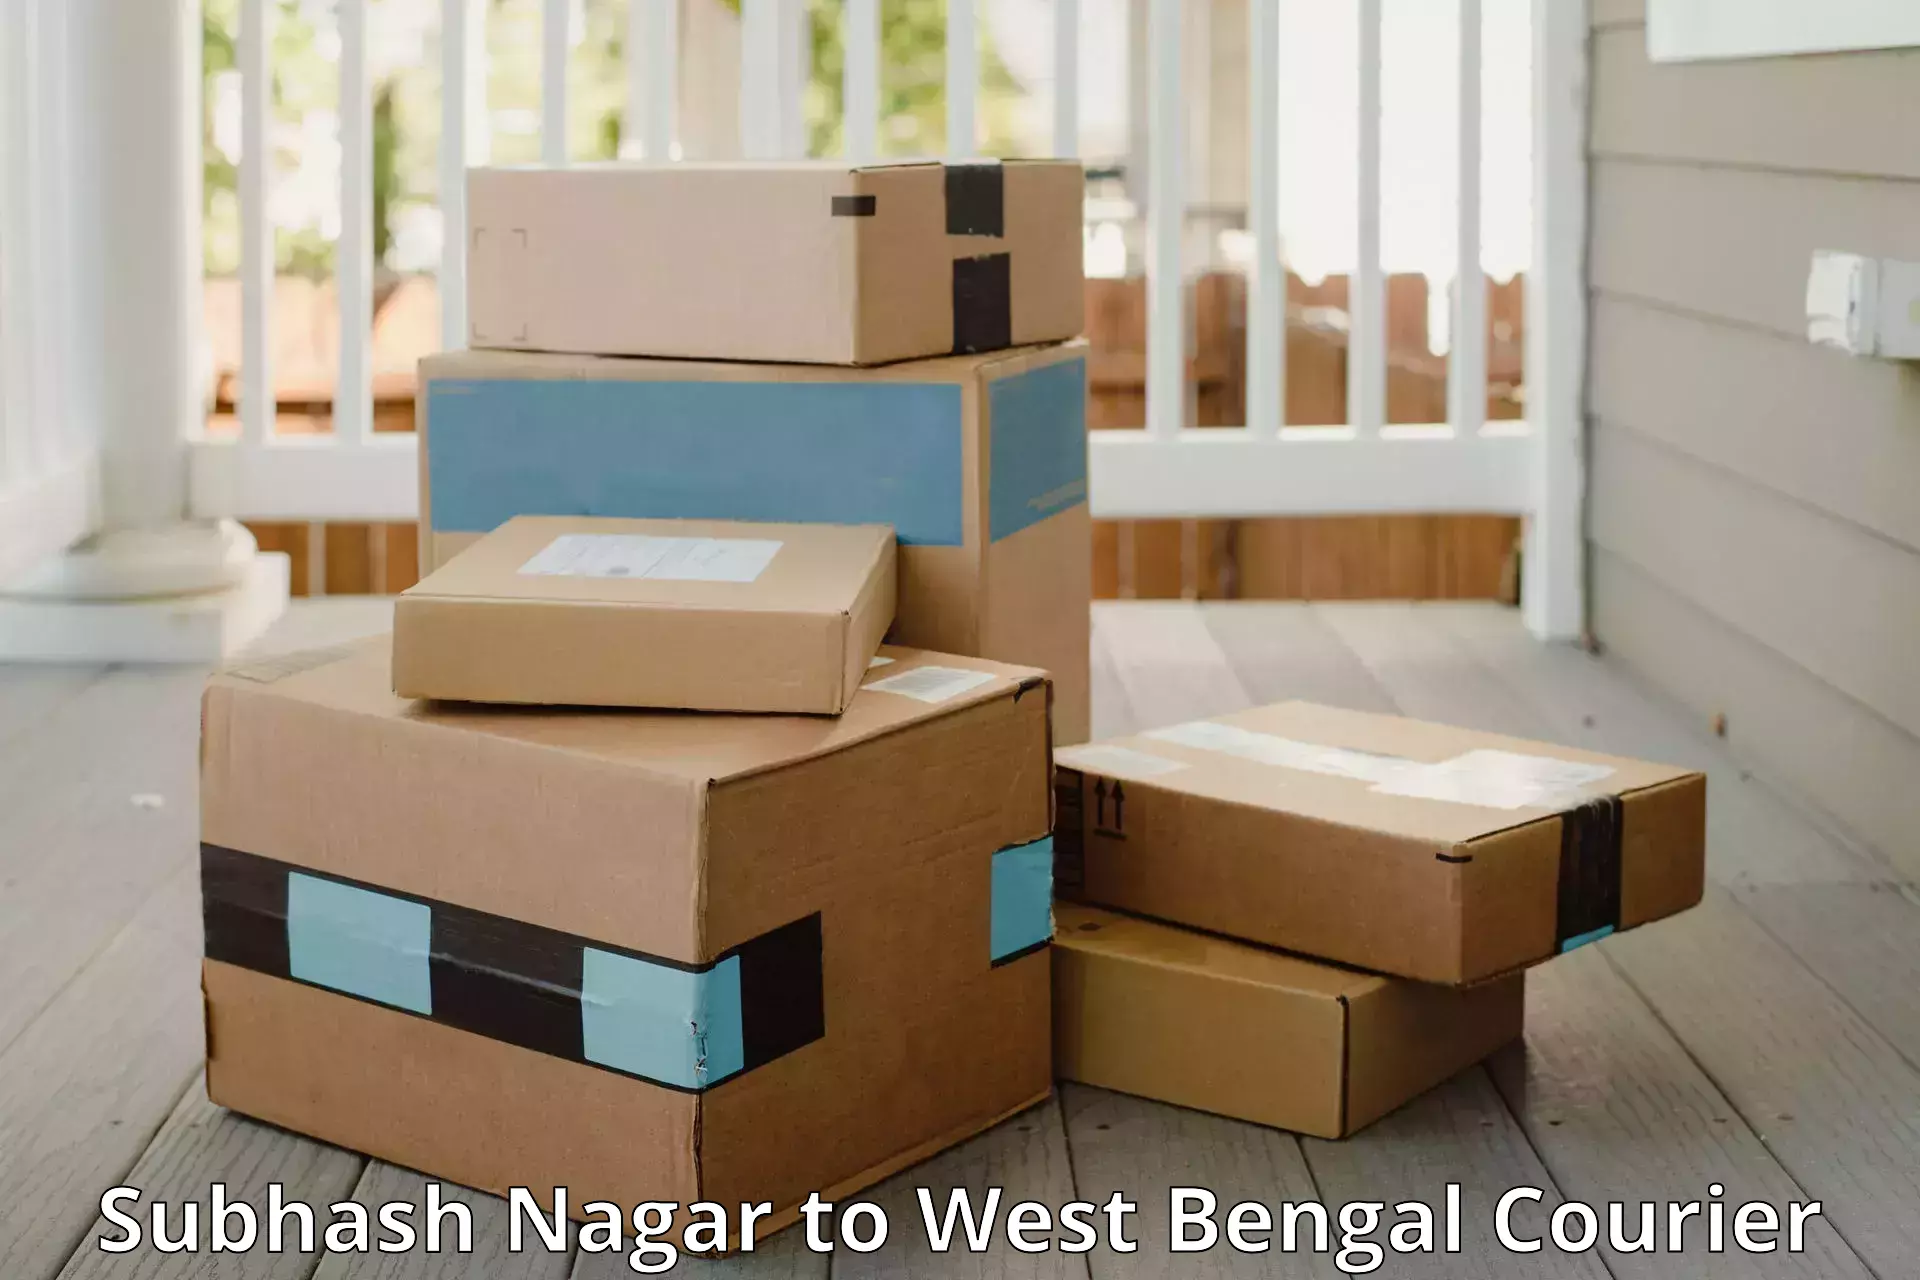 Luggage delivery network Subhash Nagar to Murshidabad